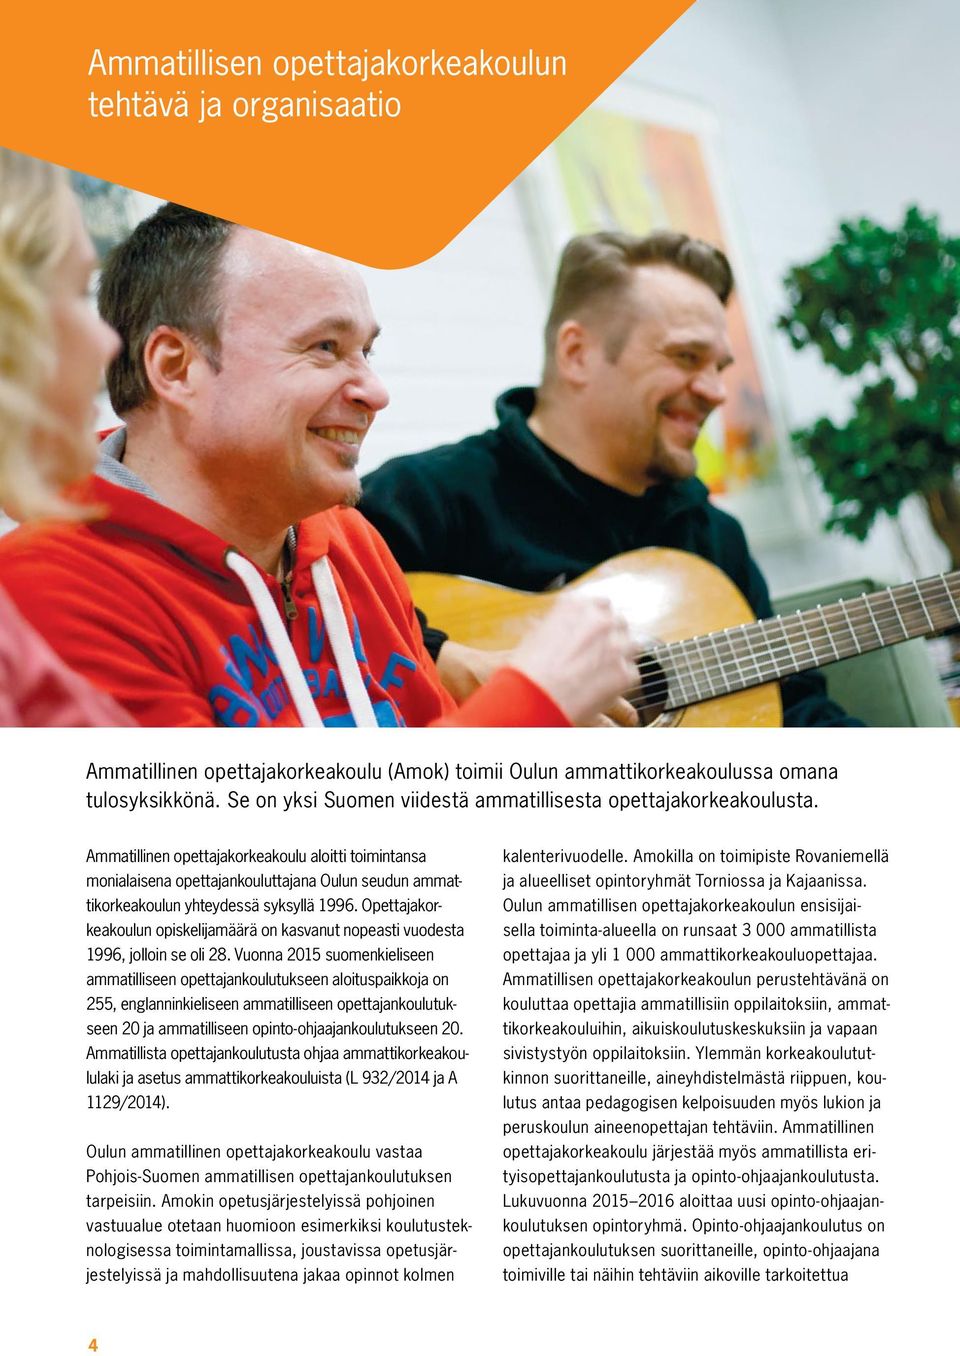 Ammatillinen opettajakorkeakoulu aloitti toimintansa monialaisena opettajankouluttajana Oulun seudun ammattikorkeakoulun yhteydessä syksyllä 1996.